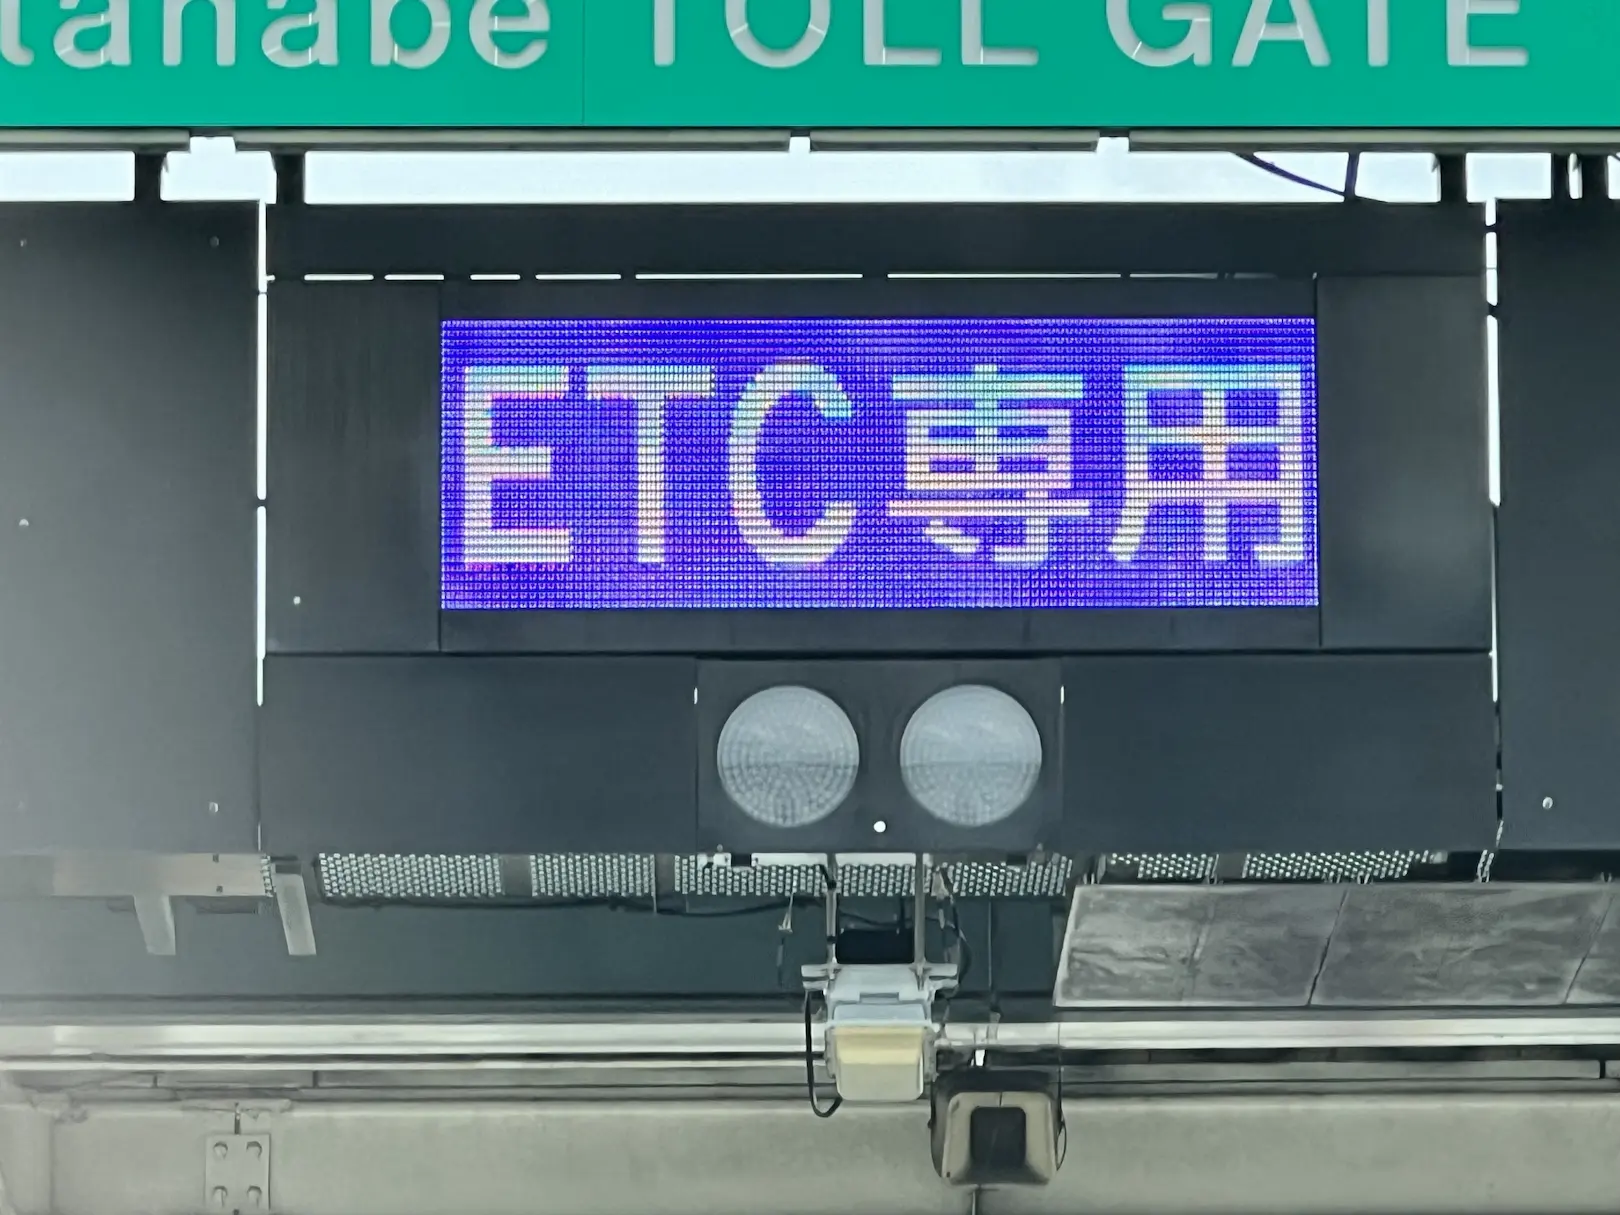 ETC専用料金所